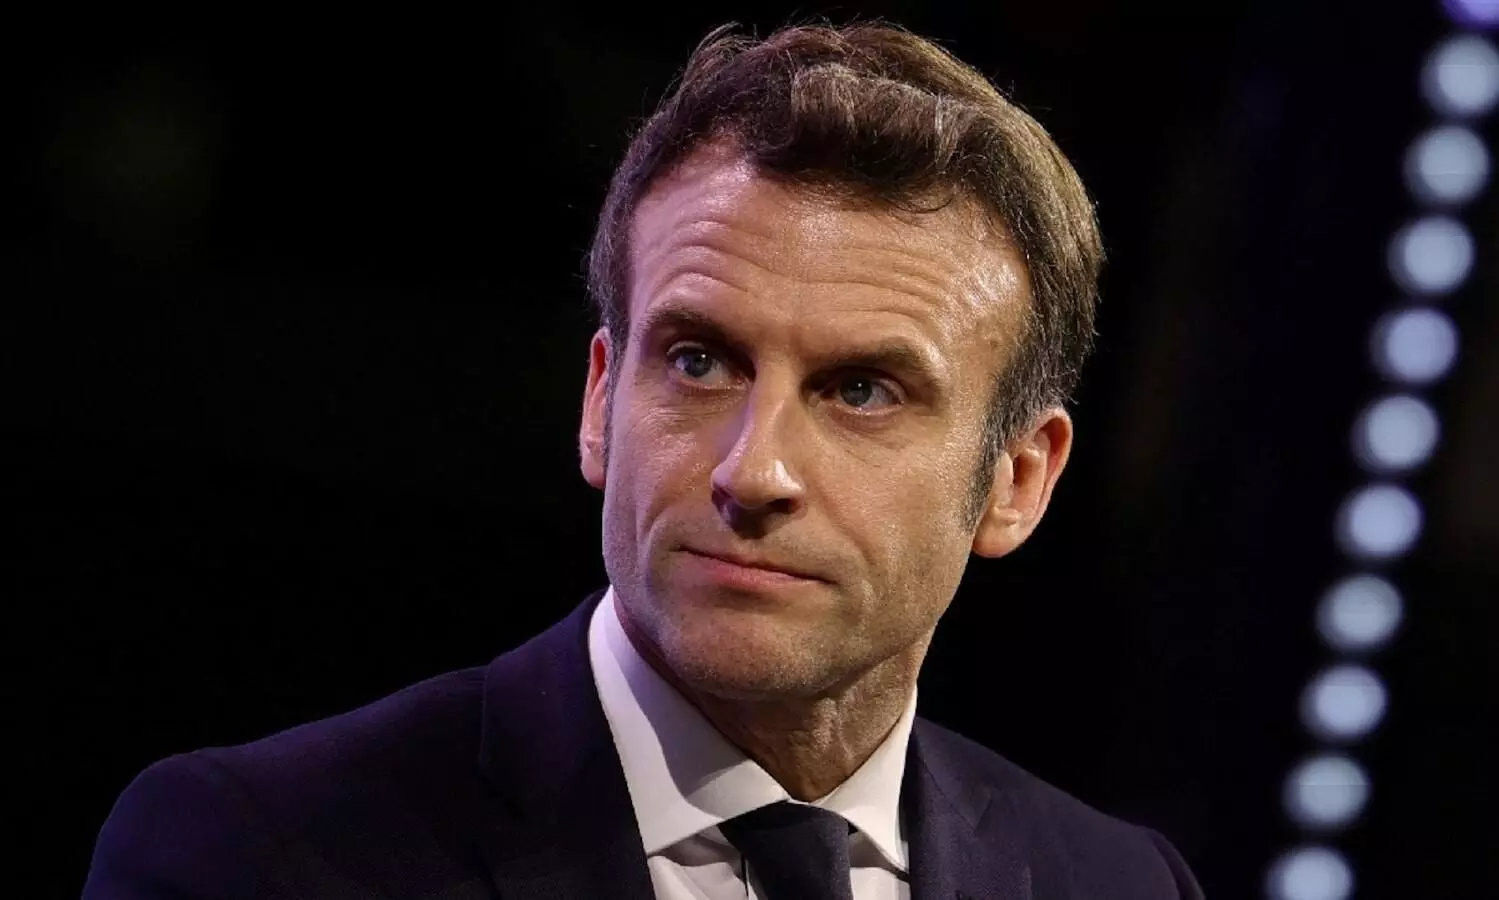 Putin will target Paris Olympics without doubt: Emmanuel Macron